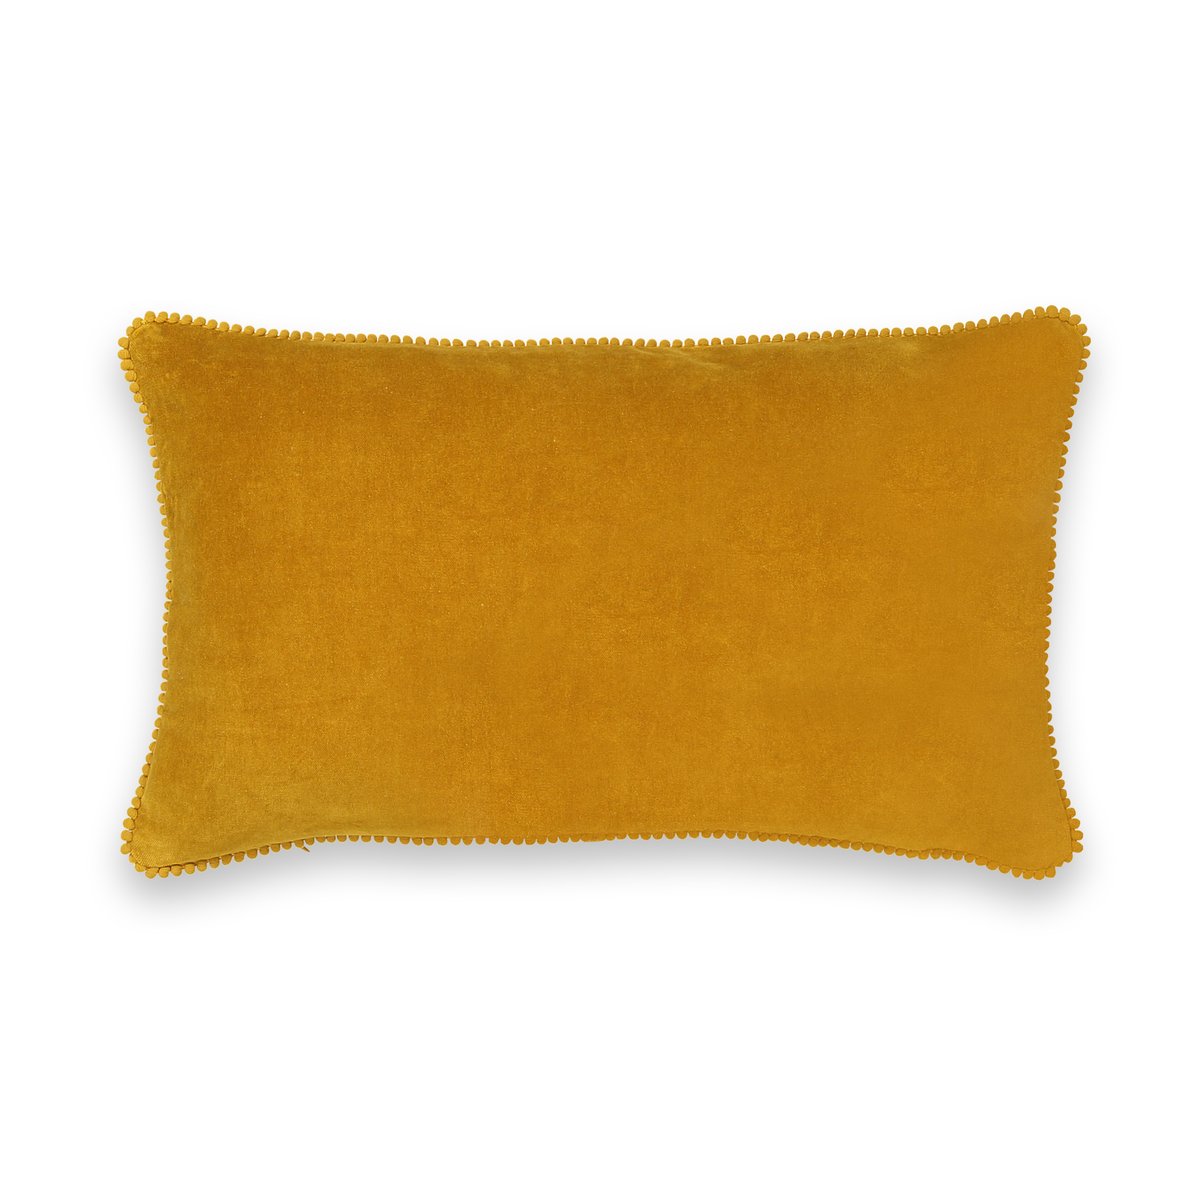 Чехол La Redoute На подушку из велюра VELVET 45 x 45 см желтый, размер 45 x 45 см - фото 3